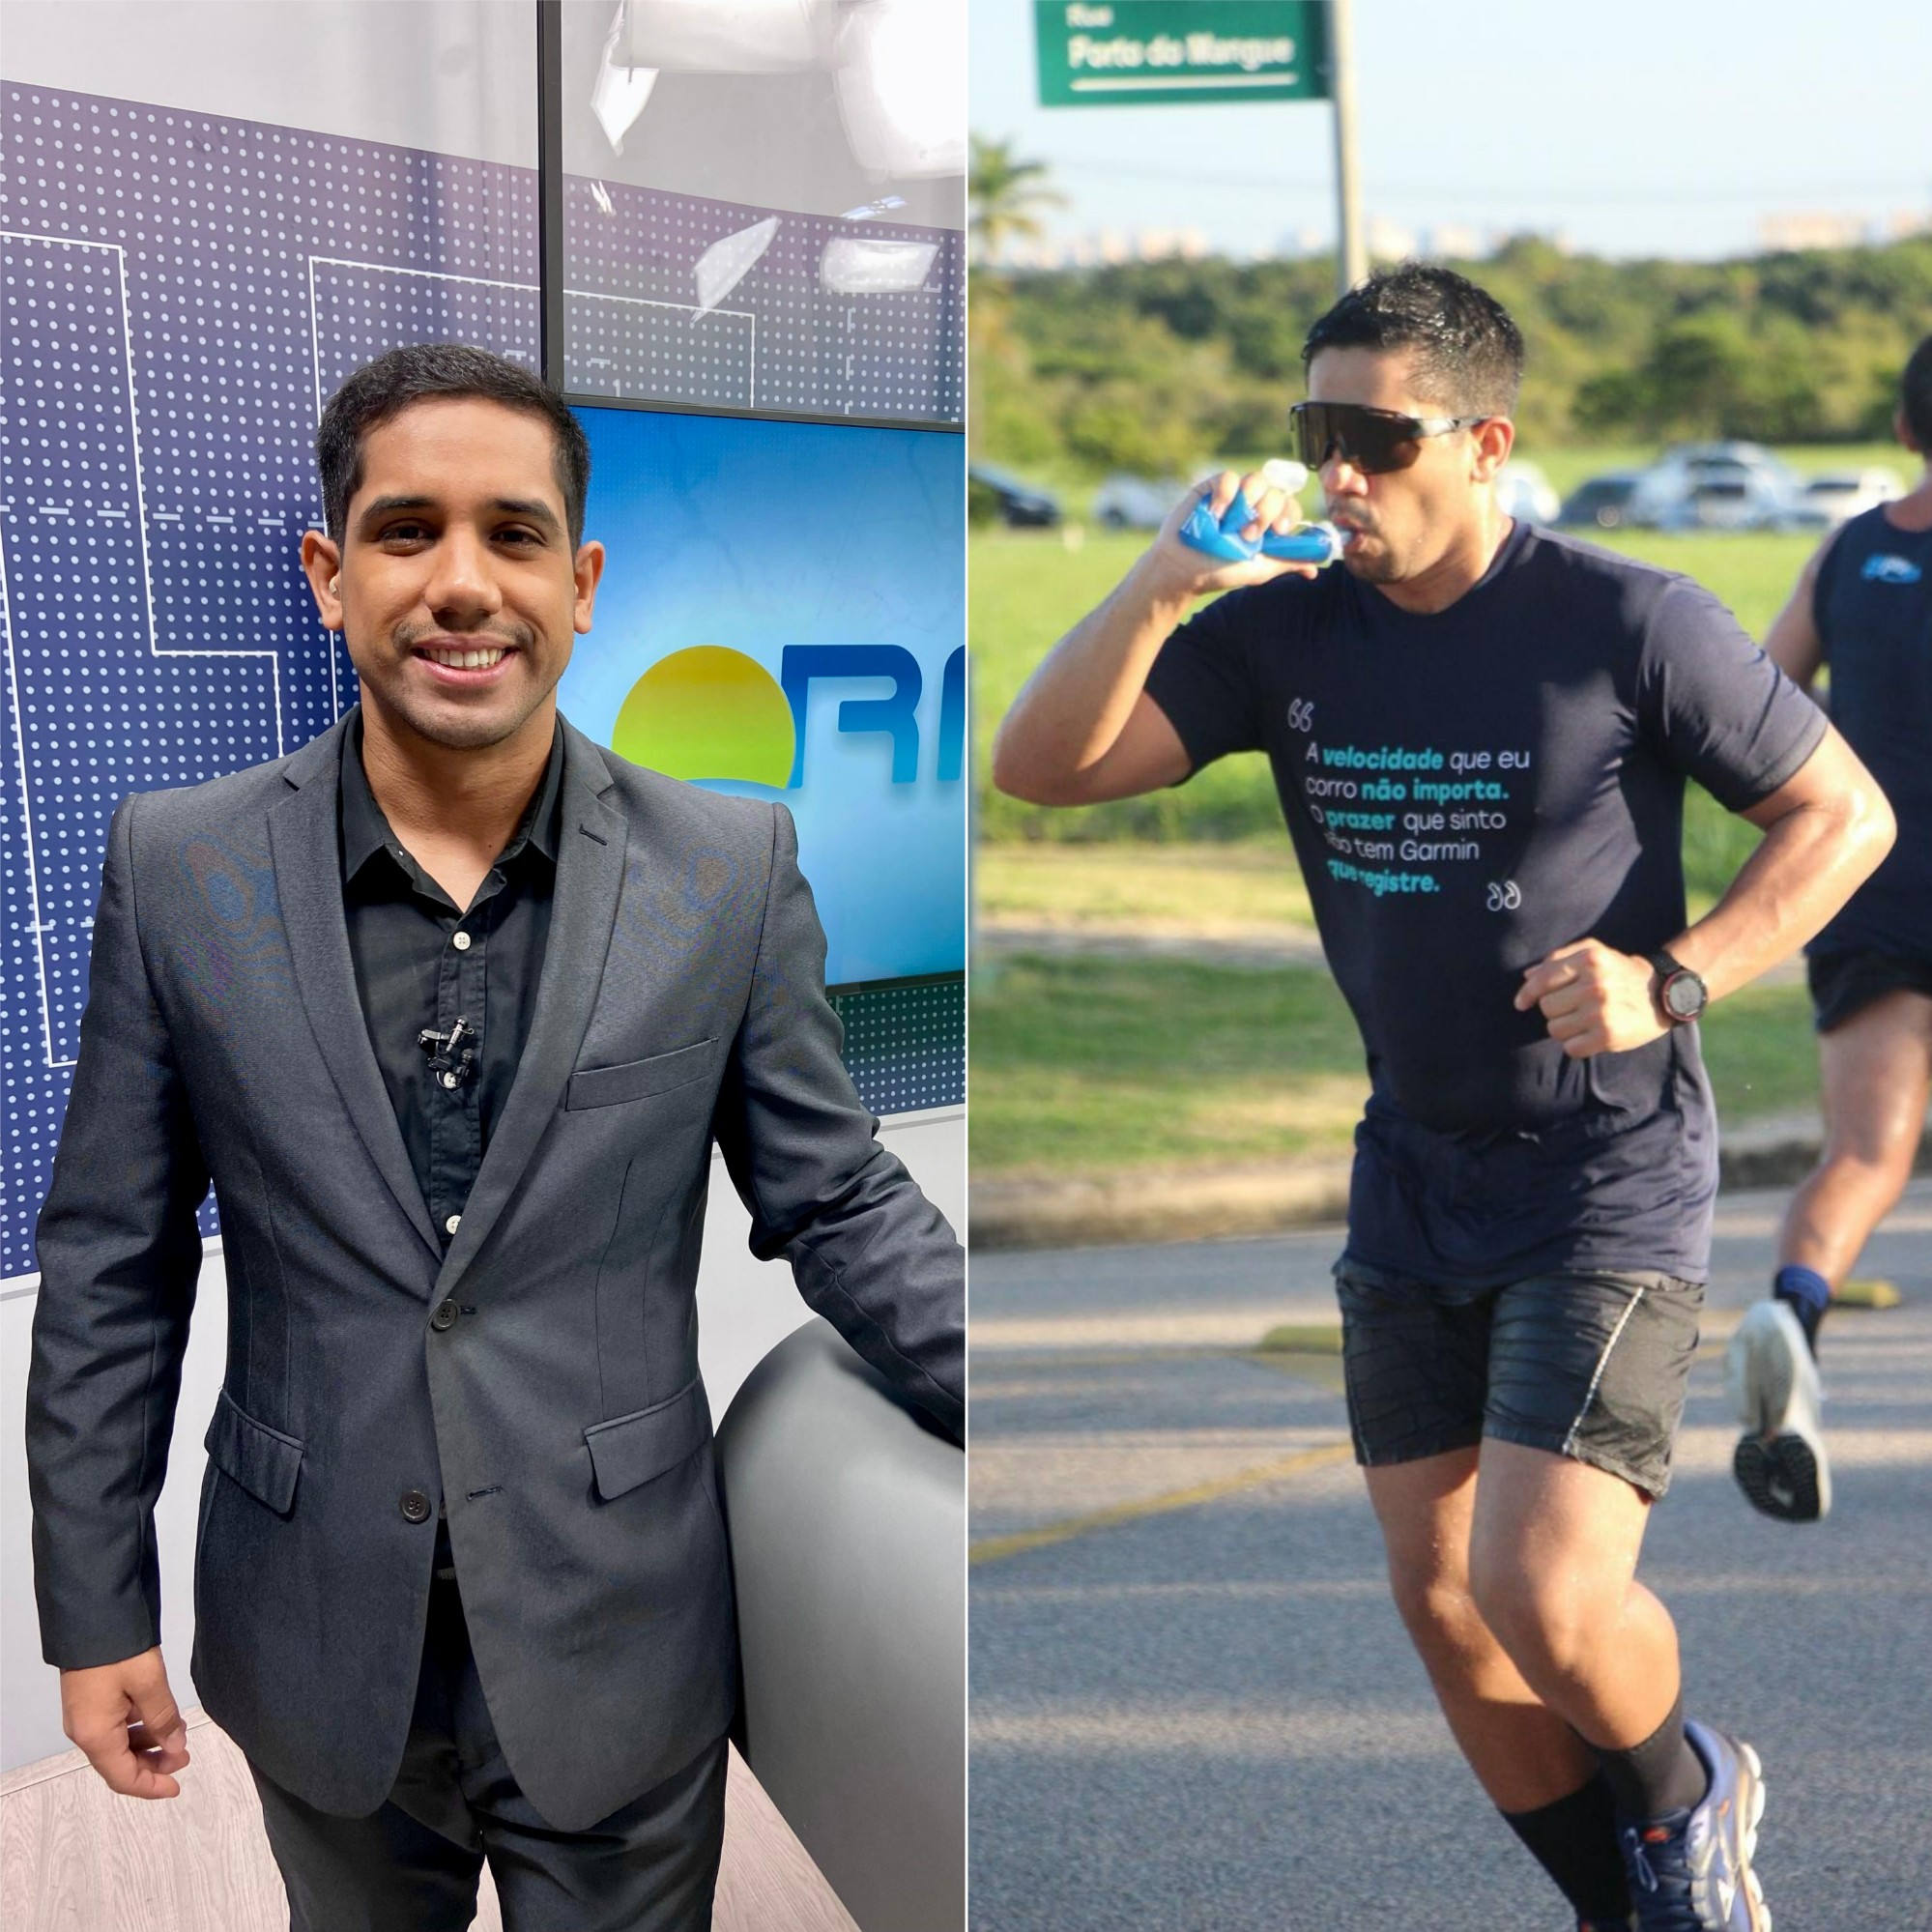 Apresentador da Inter TV vai correr a 'Maratona para Todos' nas Olimpíadas de Paris